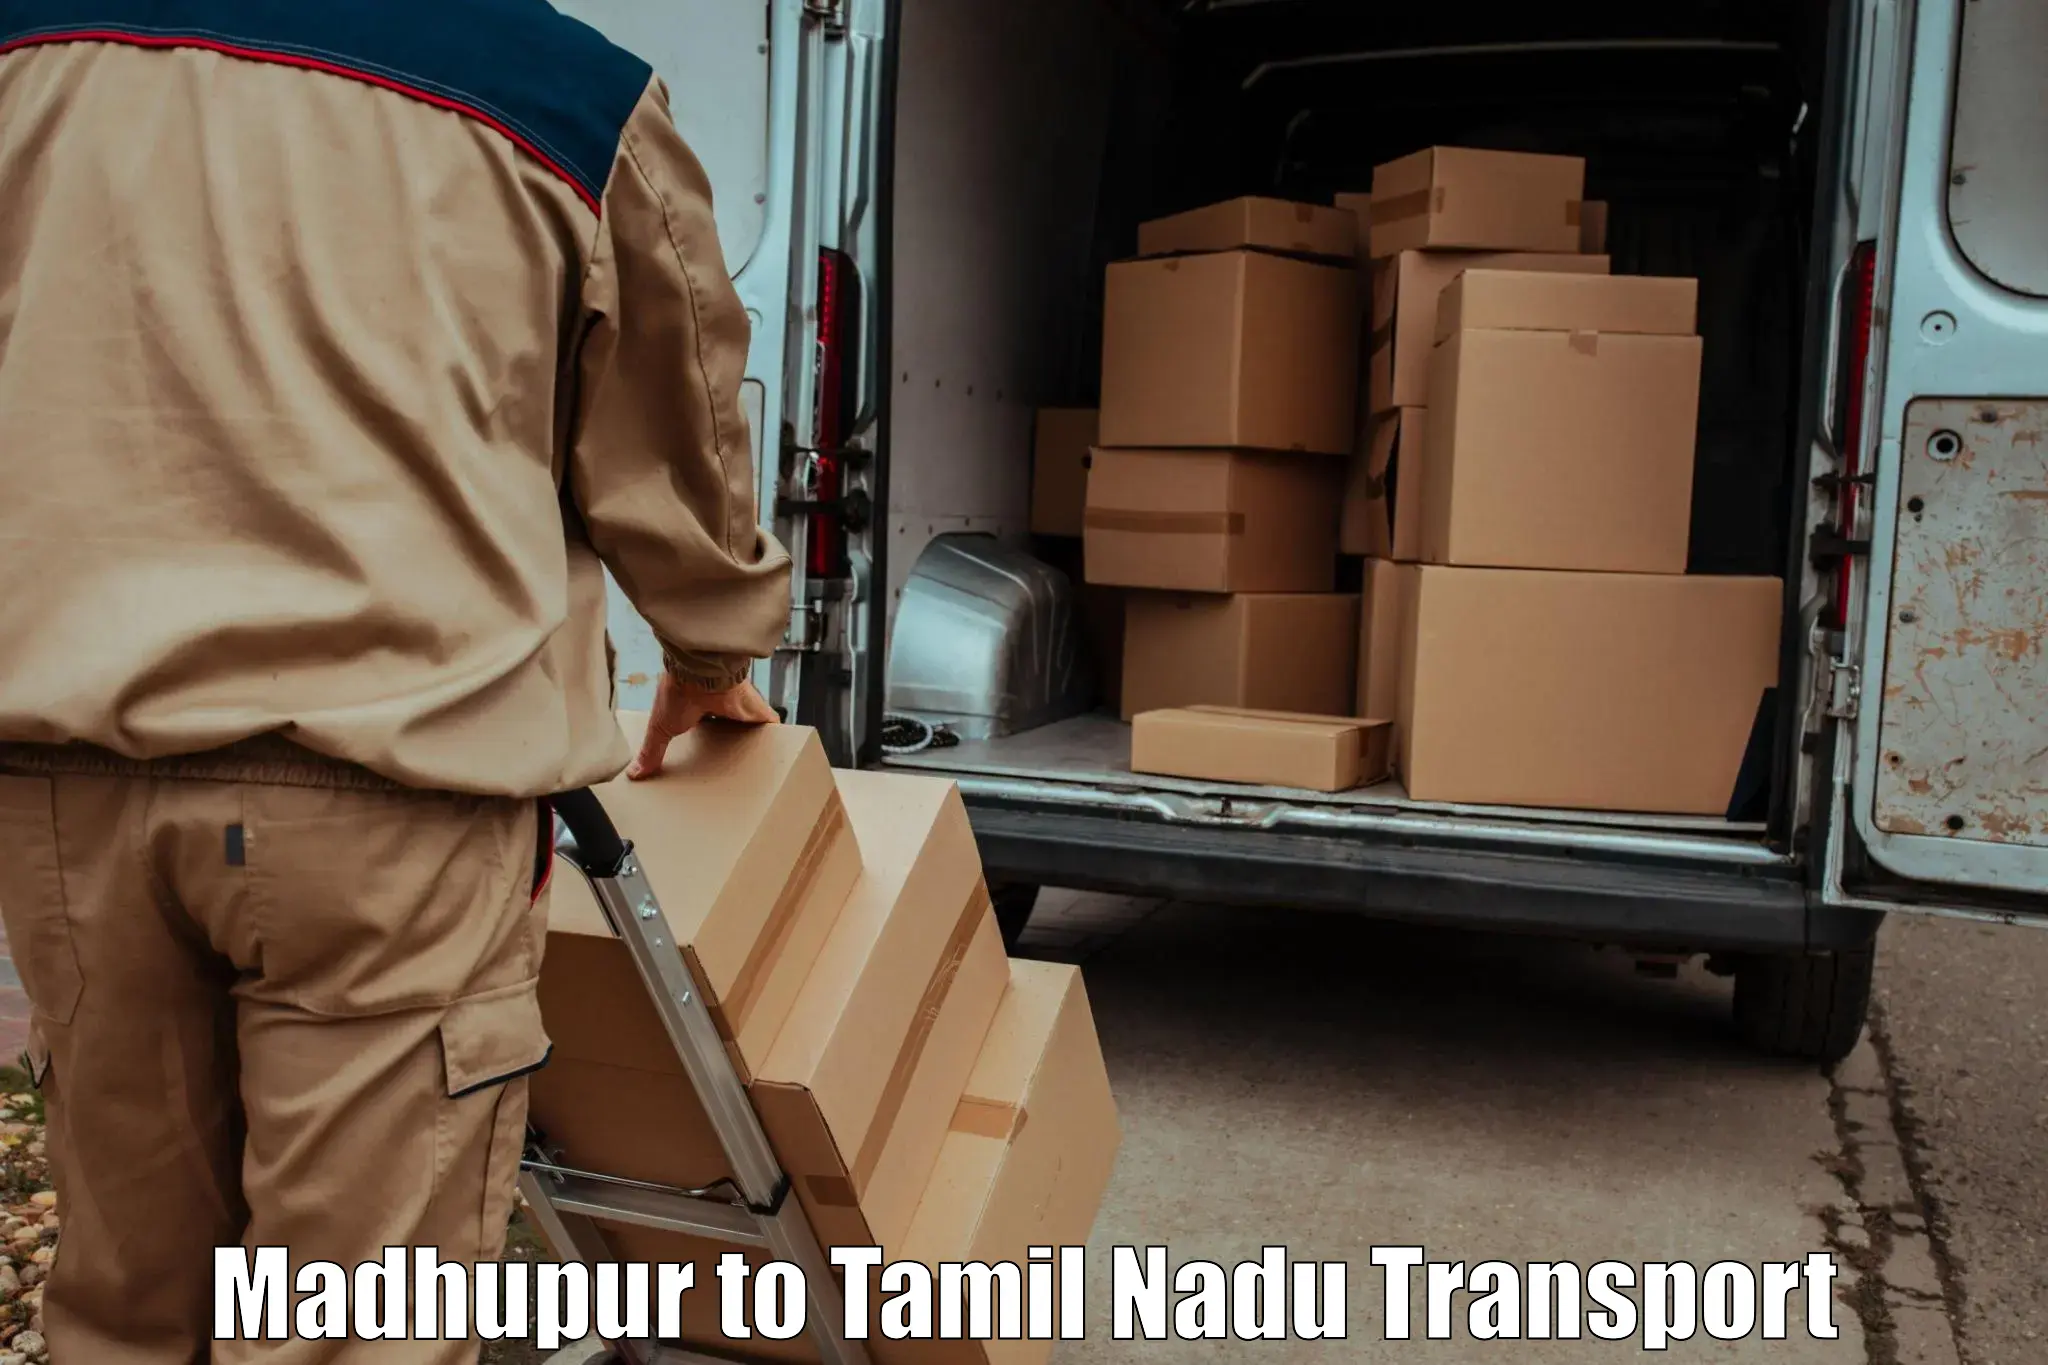 Air freight transport services Madhupur to Virudhunagar